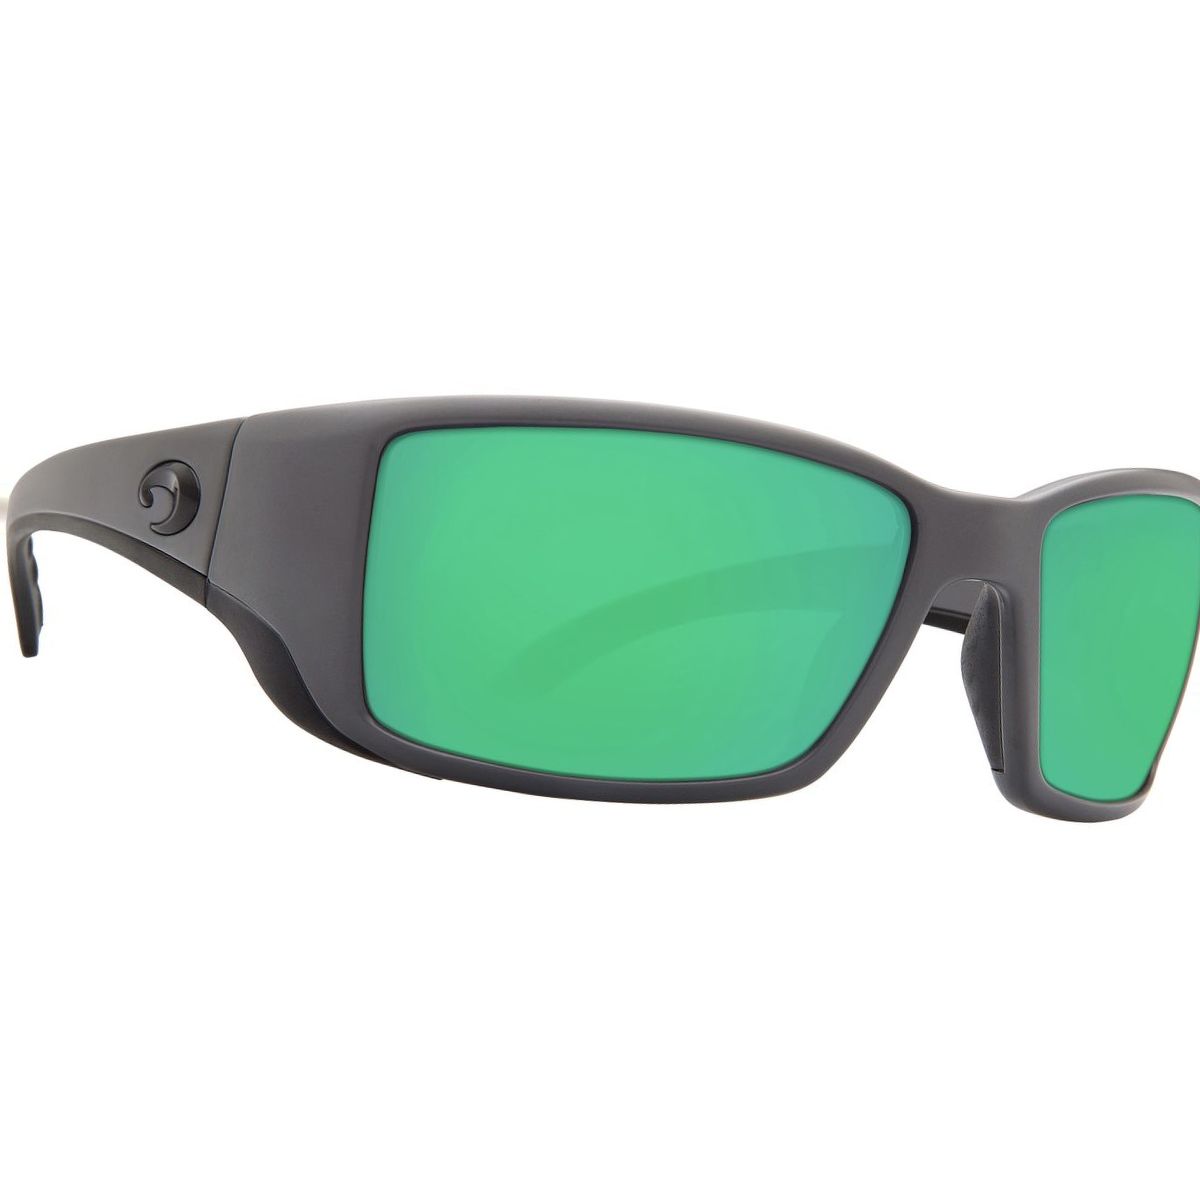 Costa Blackfin 580P Polarized Sunglasses - Men's